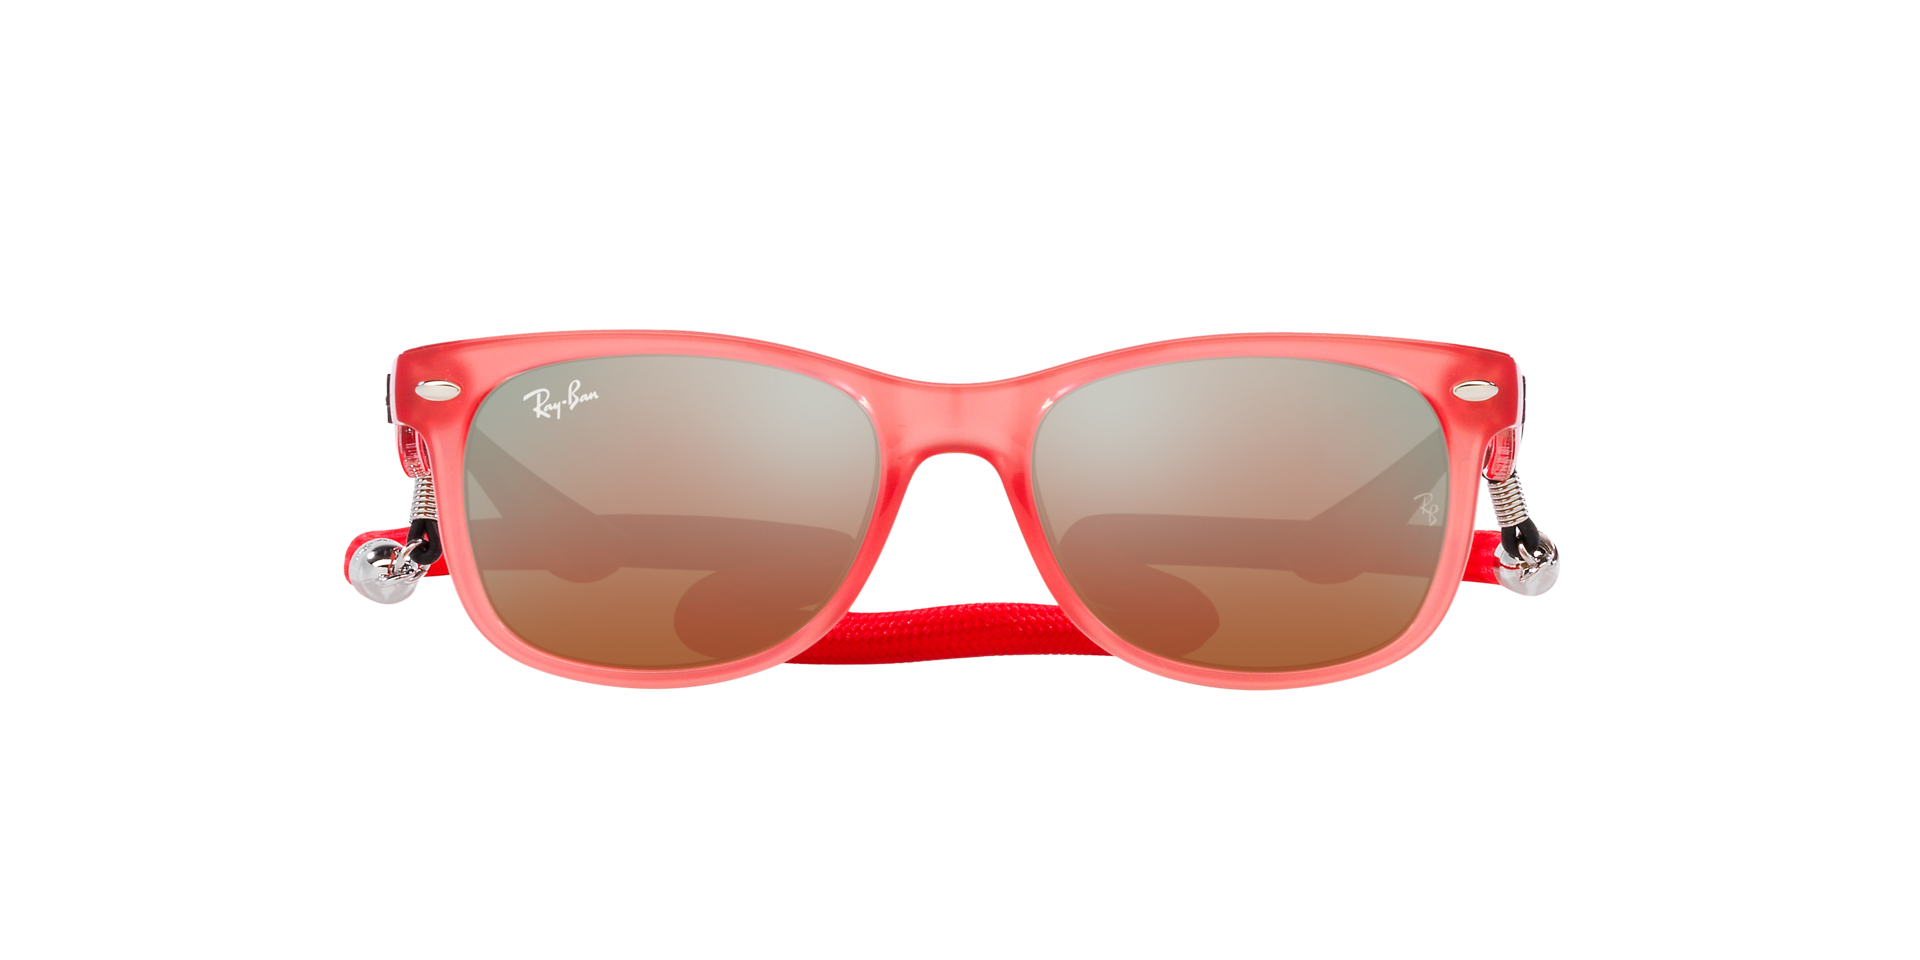 Top more than 293 rebin sunglasses